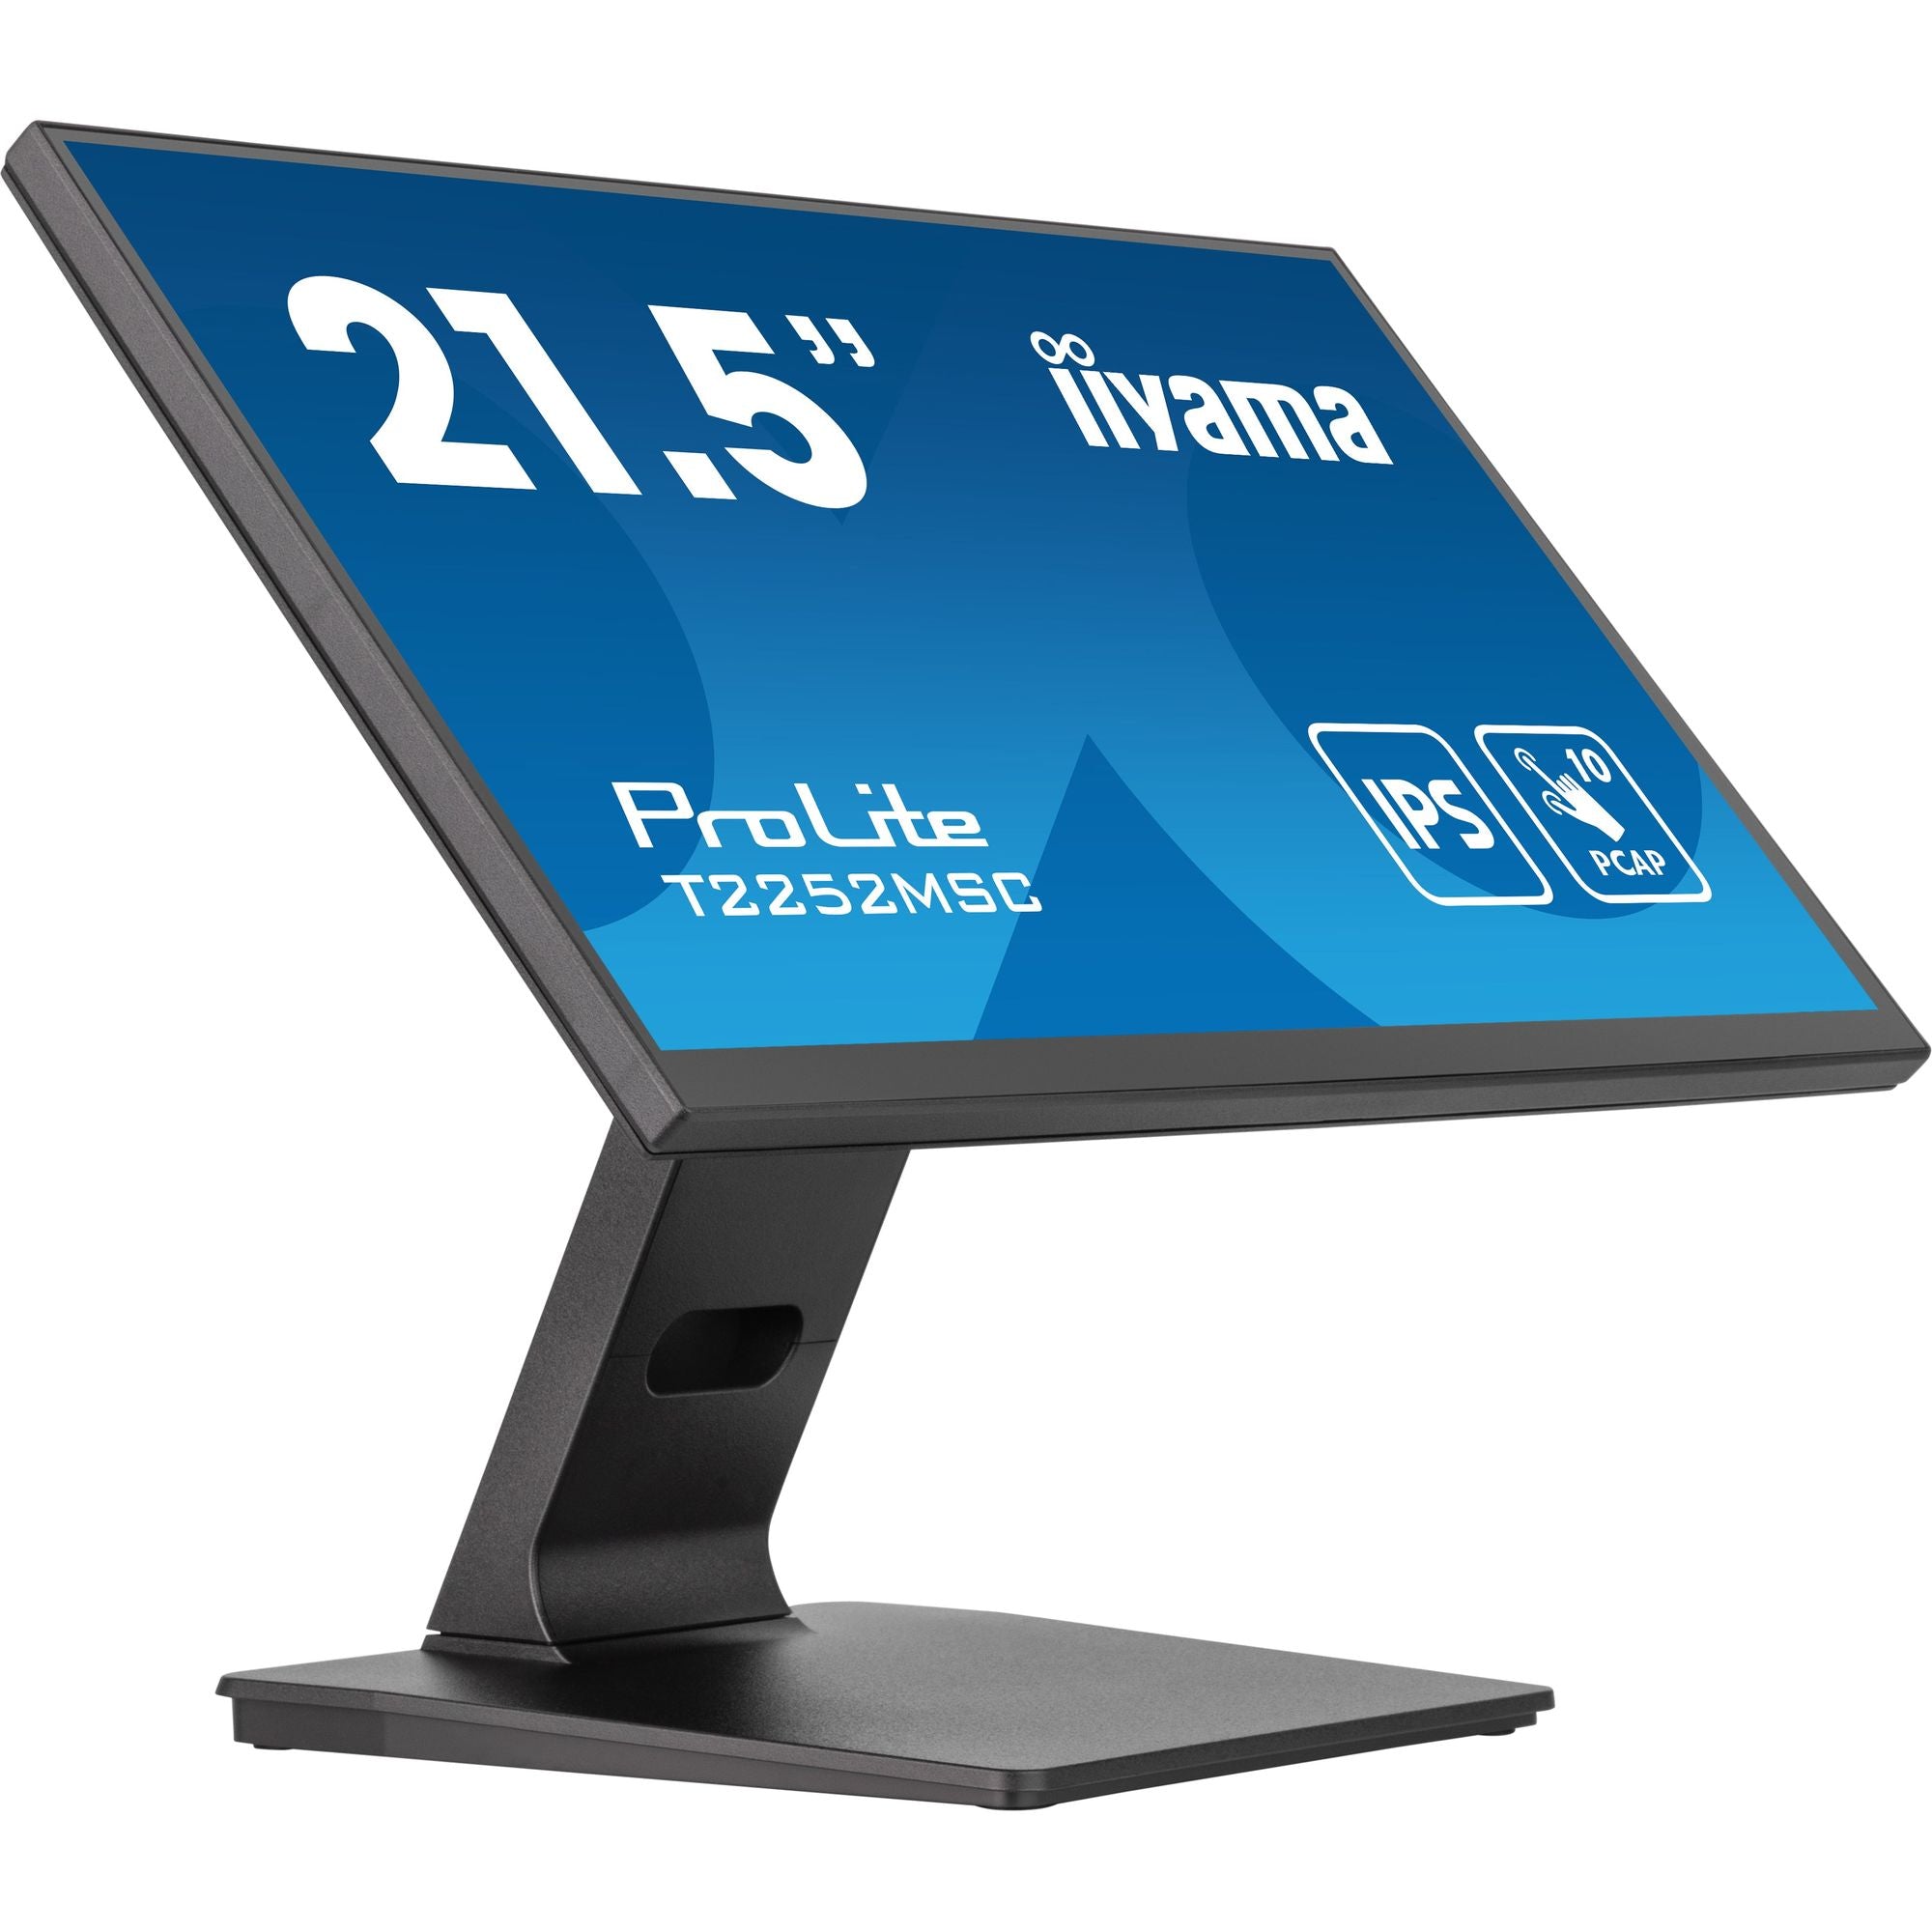 iiyama ProLite T2252MSC-B2 21.5” P-CAP 10pt IPS Touch Screen and Edge-to-Edge Glass